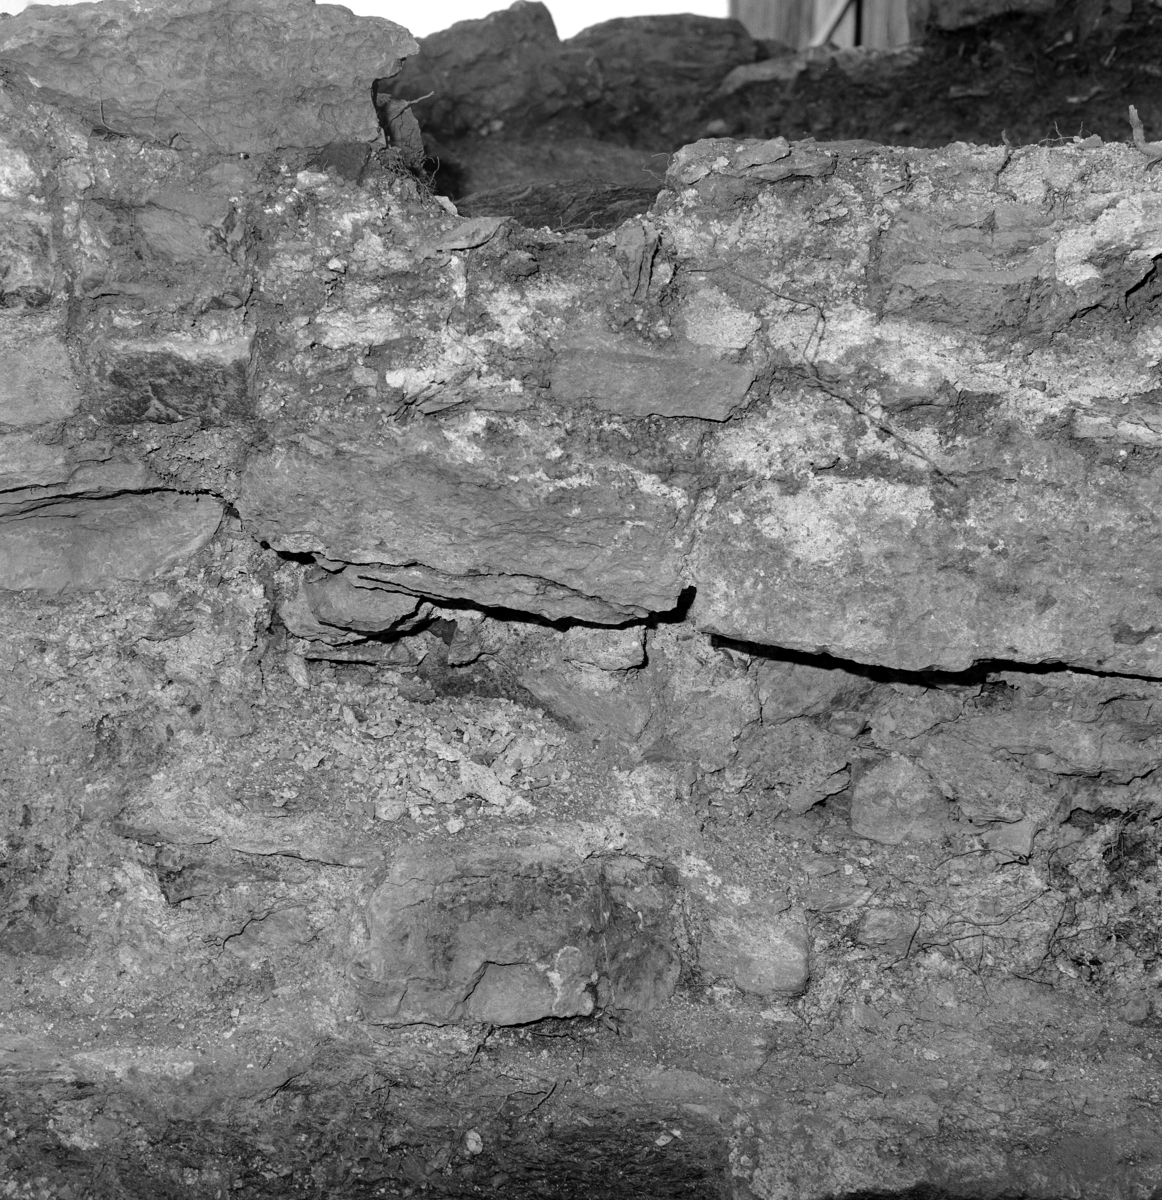 Arkeologiske undersøkelser i kjellerruin vest for drengestua 1986-1989. Nordvegg i den nyere delen av kjelleranlegget under utgravning 1989.